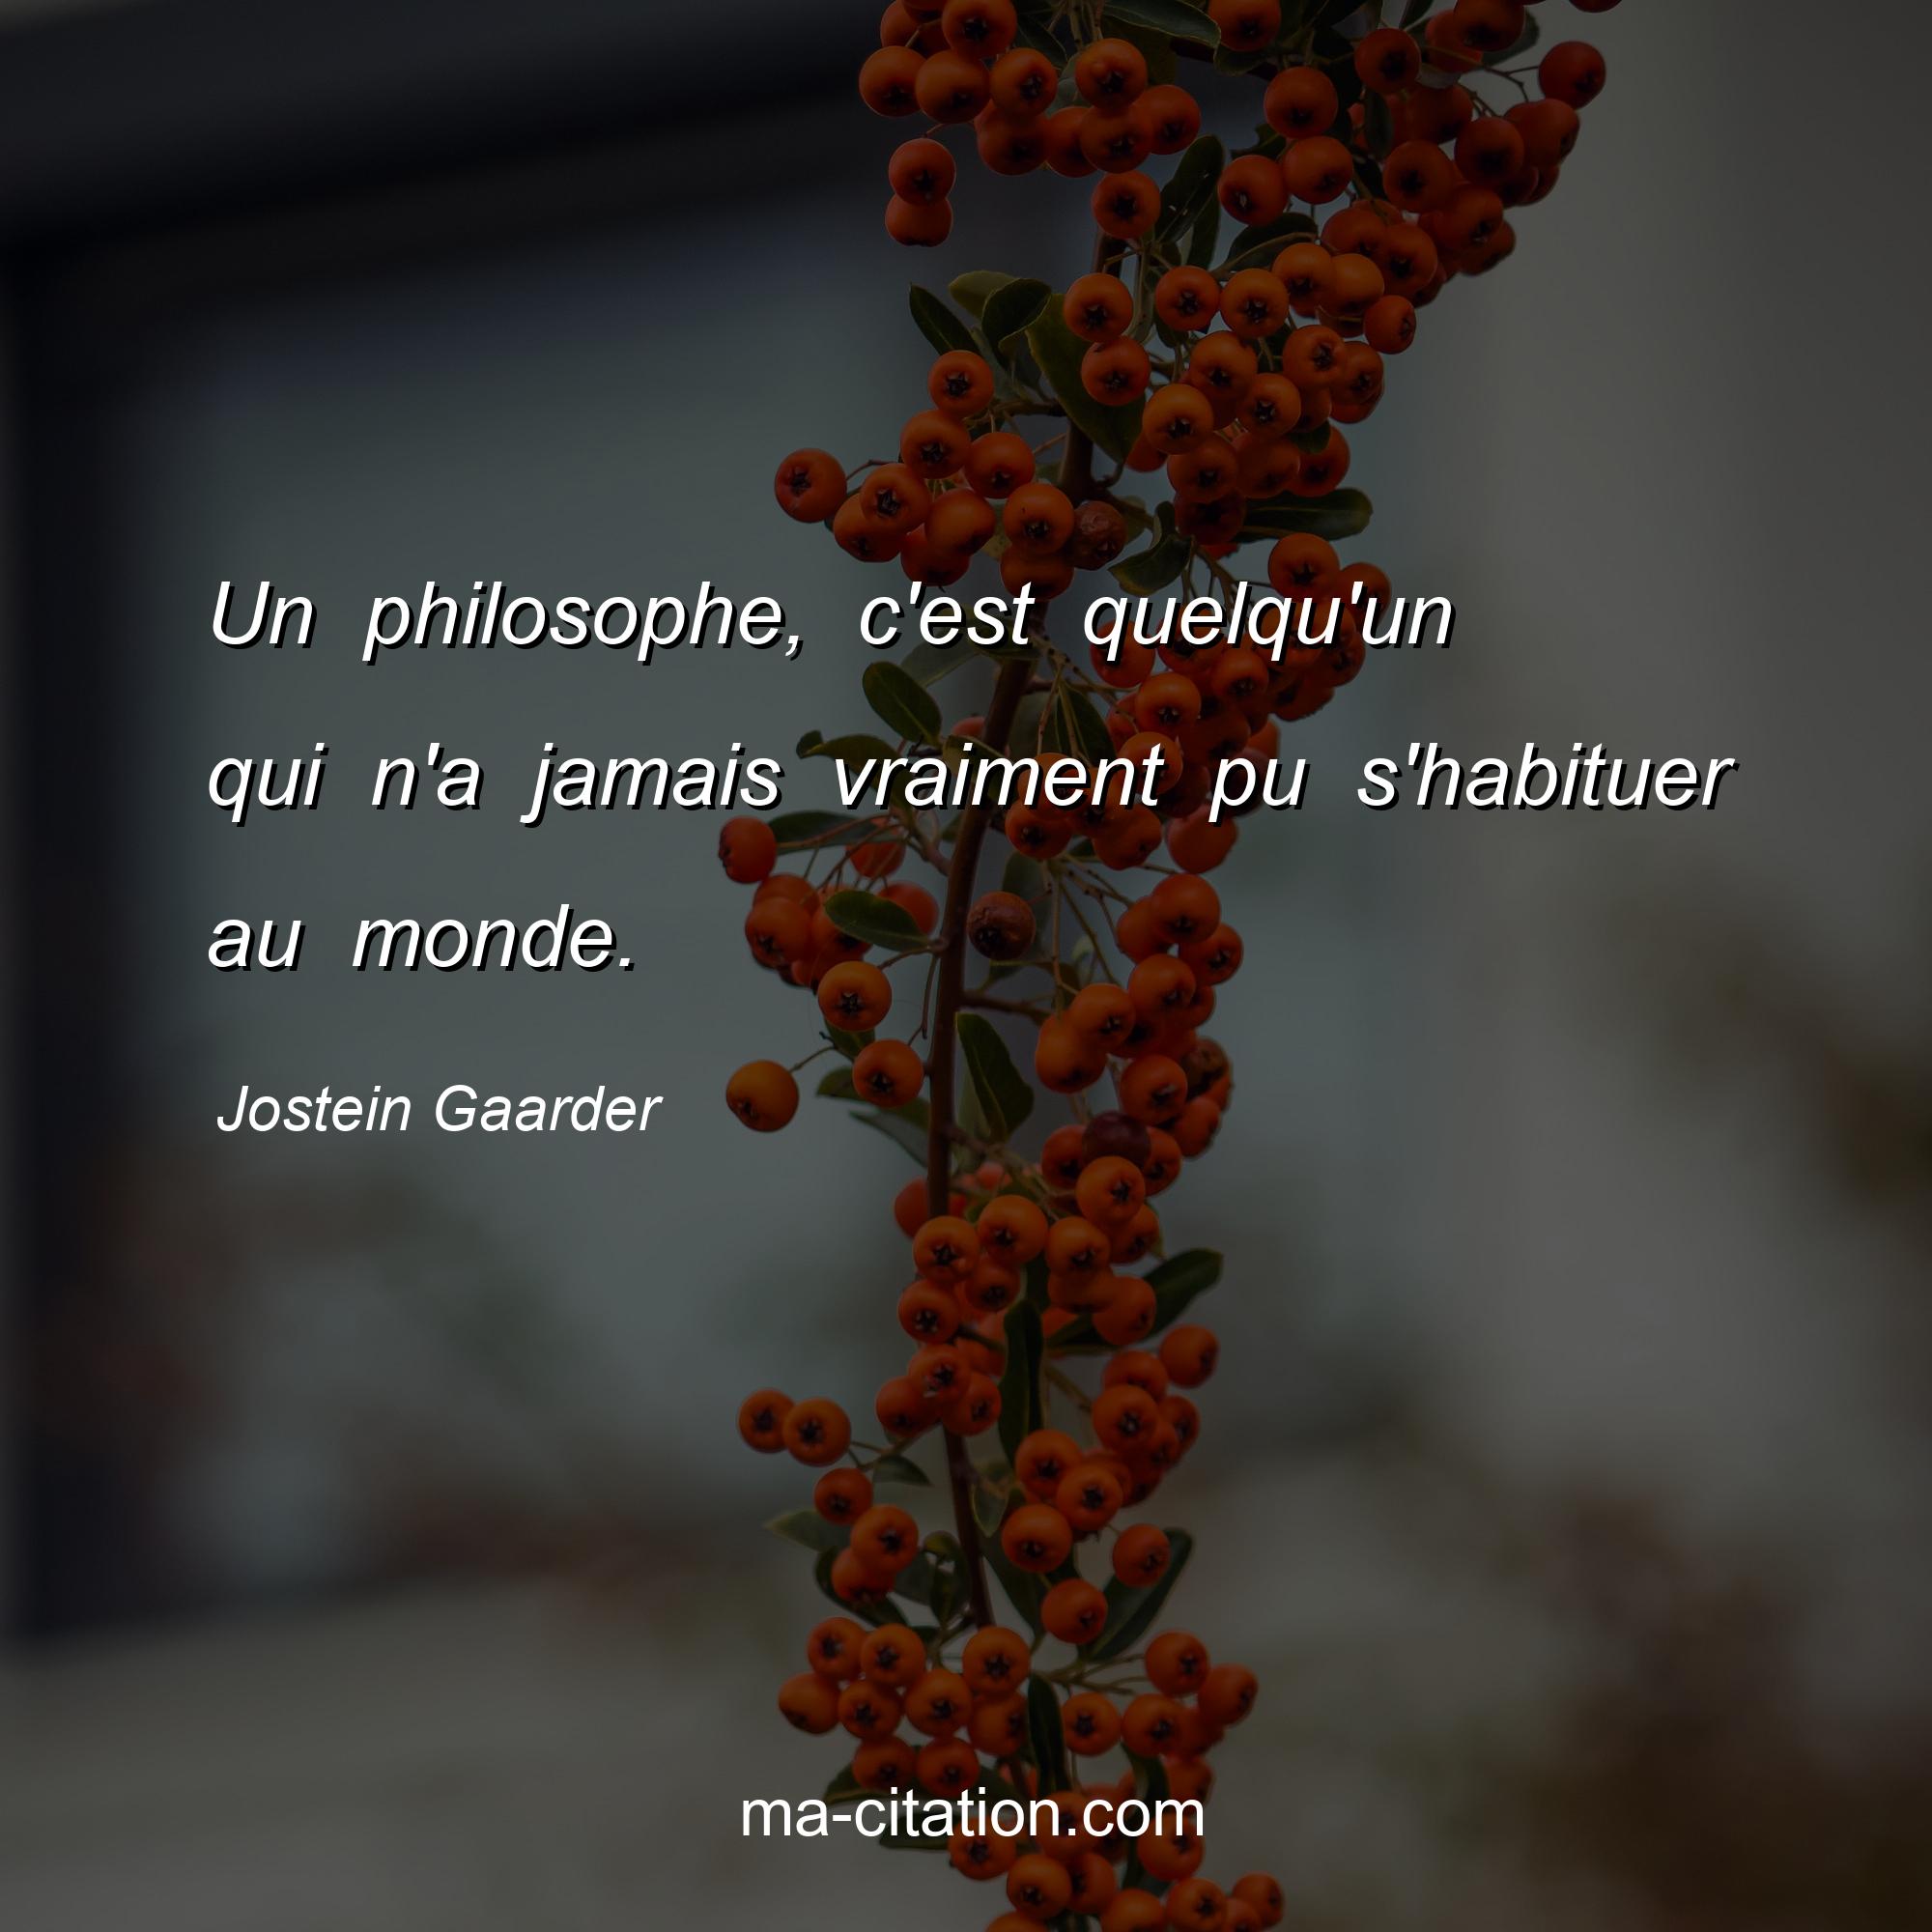 Jostein Gaarder : Un philosophe, c'est quelqu'un qui n'a jamais vraiment pu s'habituer au monde.